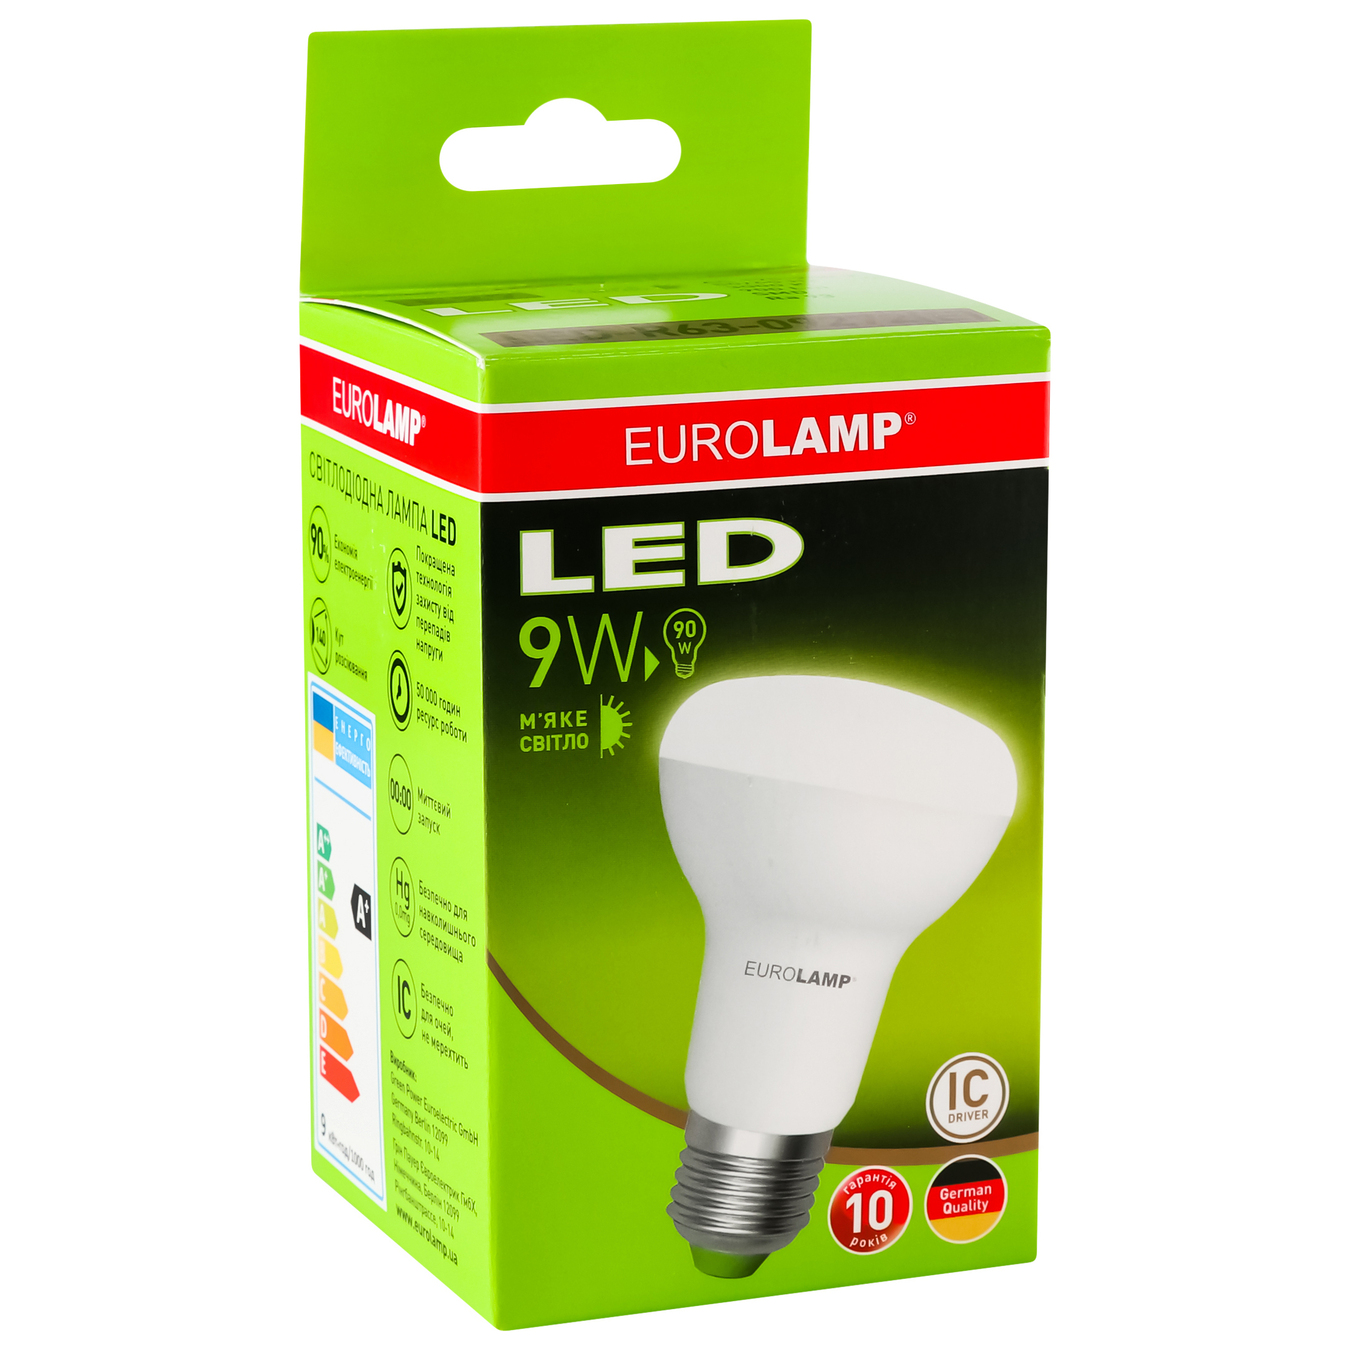 LED lamp Eurolamp eko P R63 9W 3000K E27 4